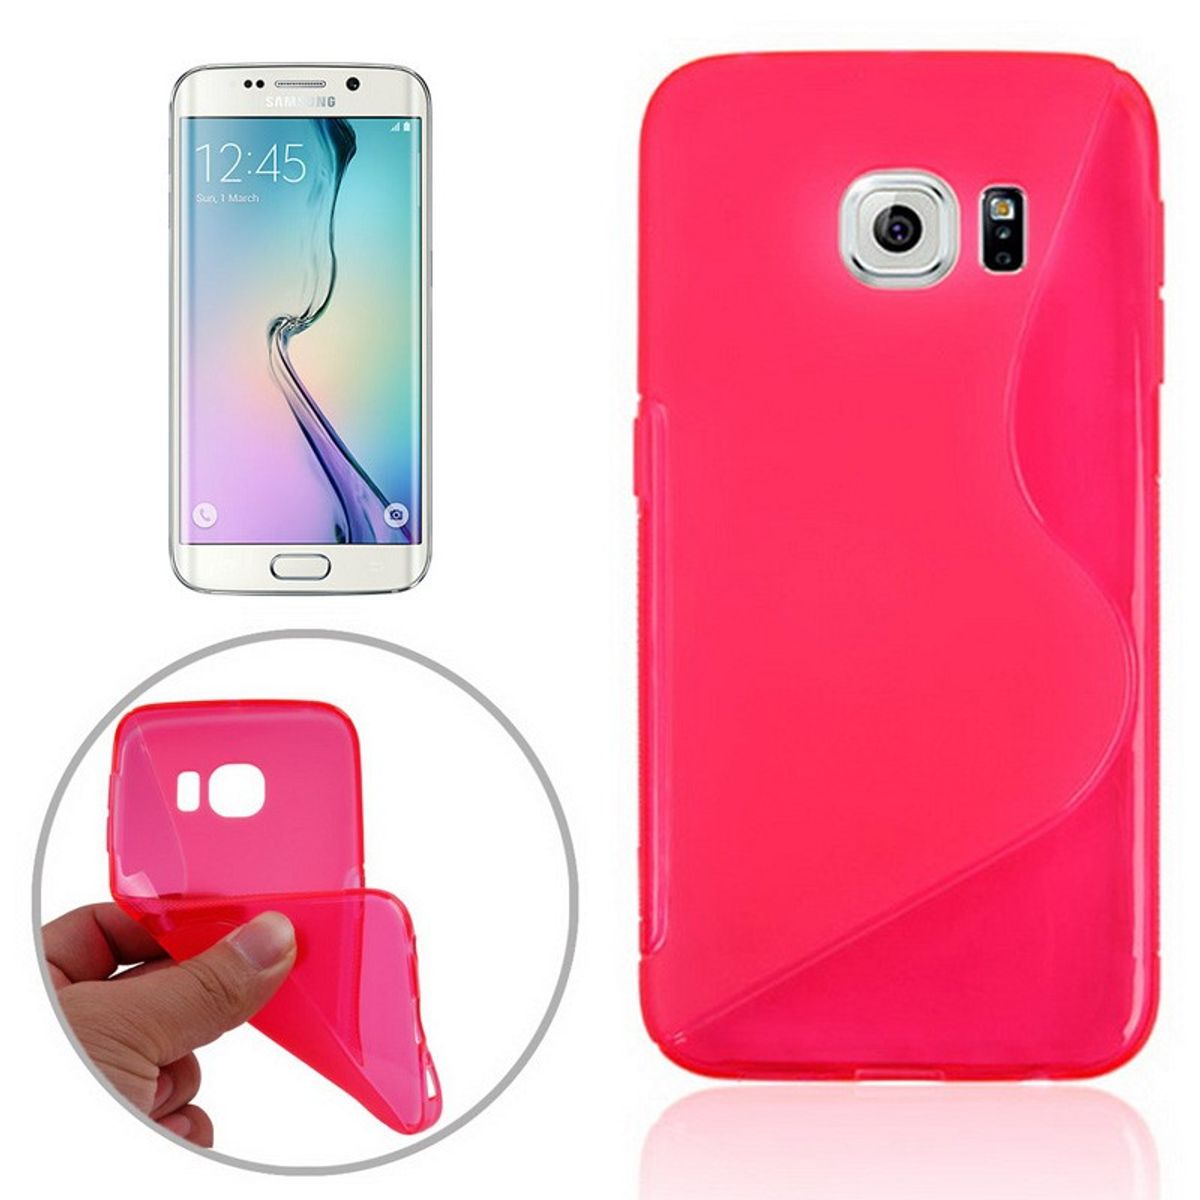 König Design Samsung Galaxy S6 Edge SM-G925 Handy Tasche Schutz Hülle Design S-Line TPU Cover Schale Anti Finger Case Pink